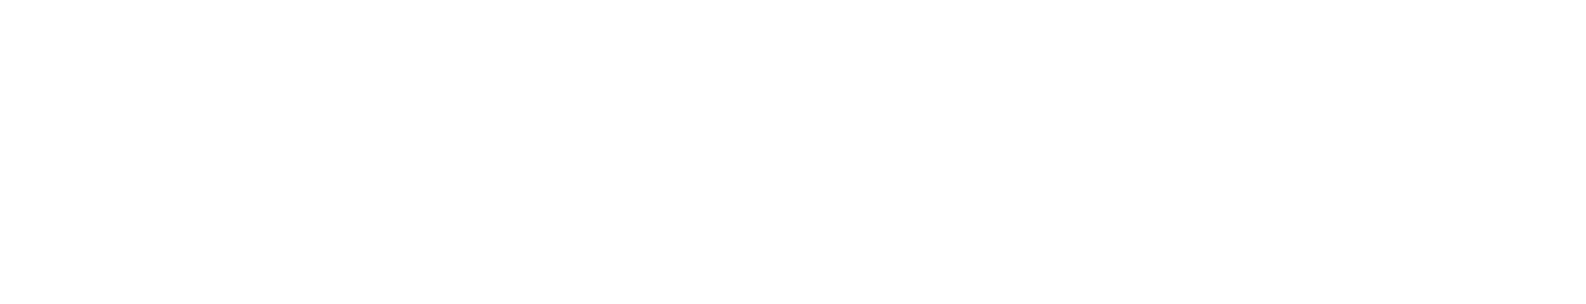 U.S. Cellular
 logo grand pour les fonds sombres (PNG transparent)